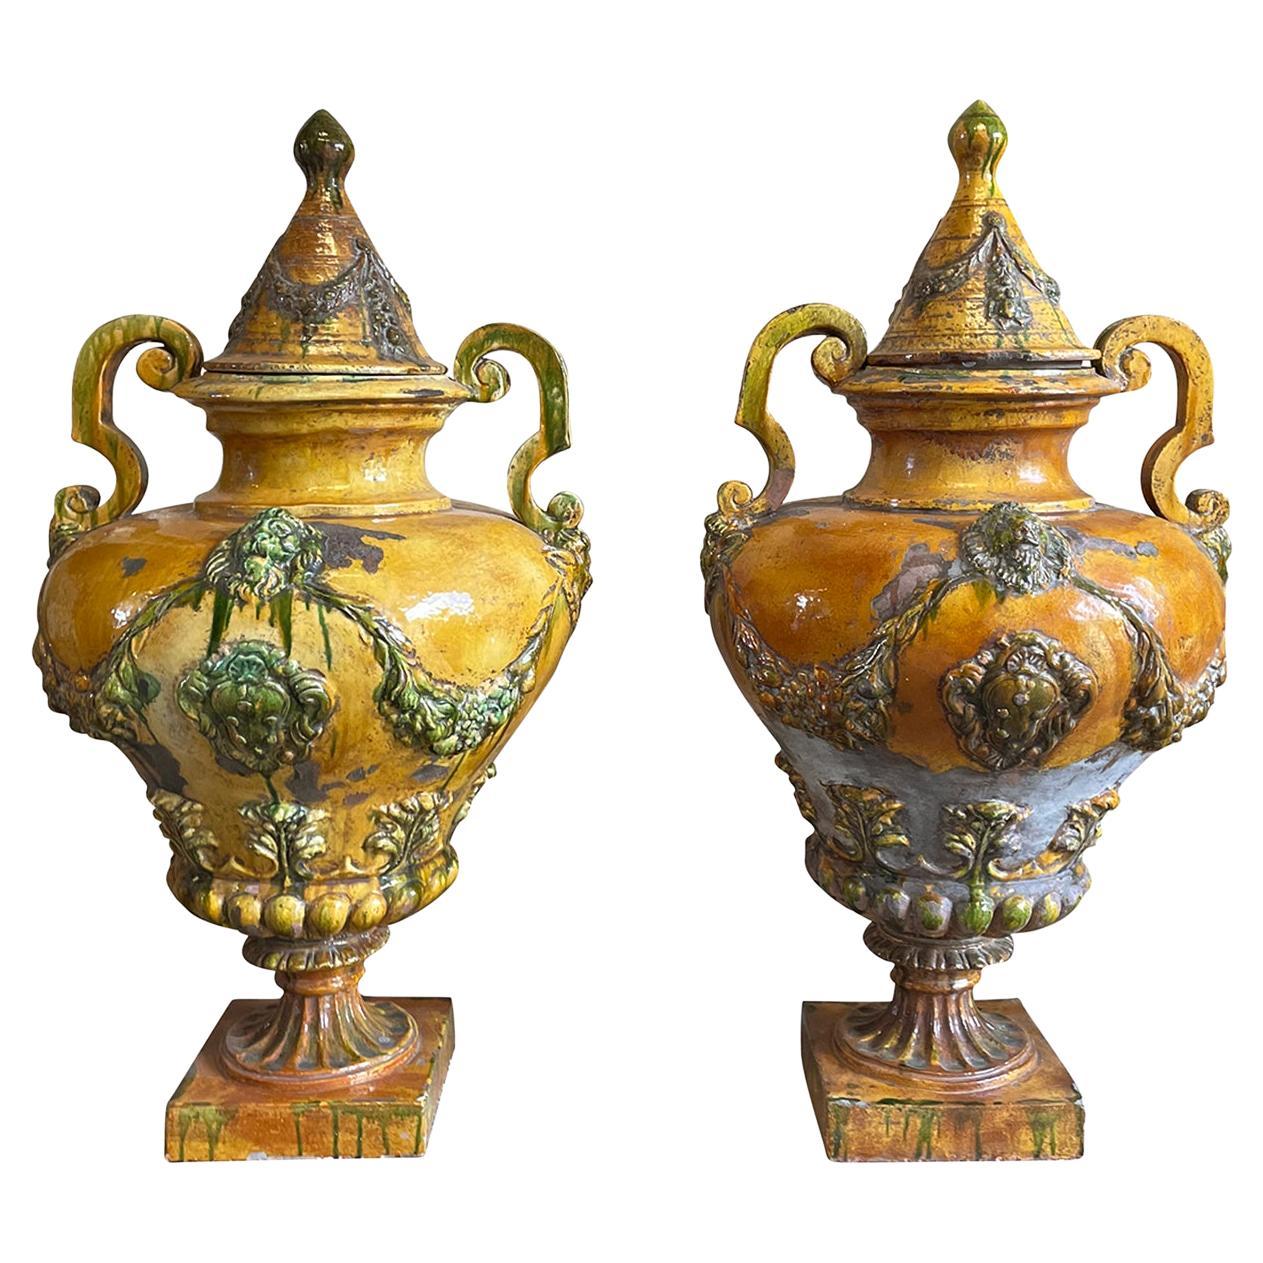 Paire d'urnes italiennes anciennes en céramique jaune du 19ème siècle - Ornements de jardin